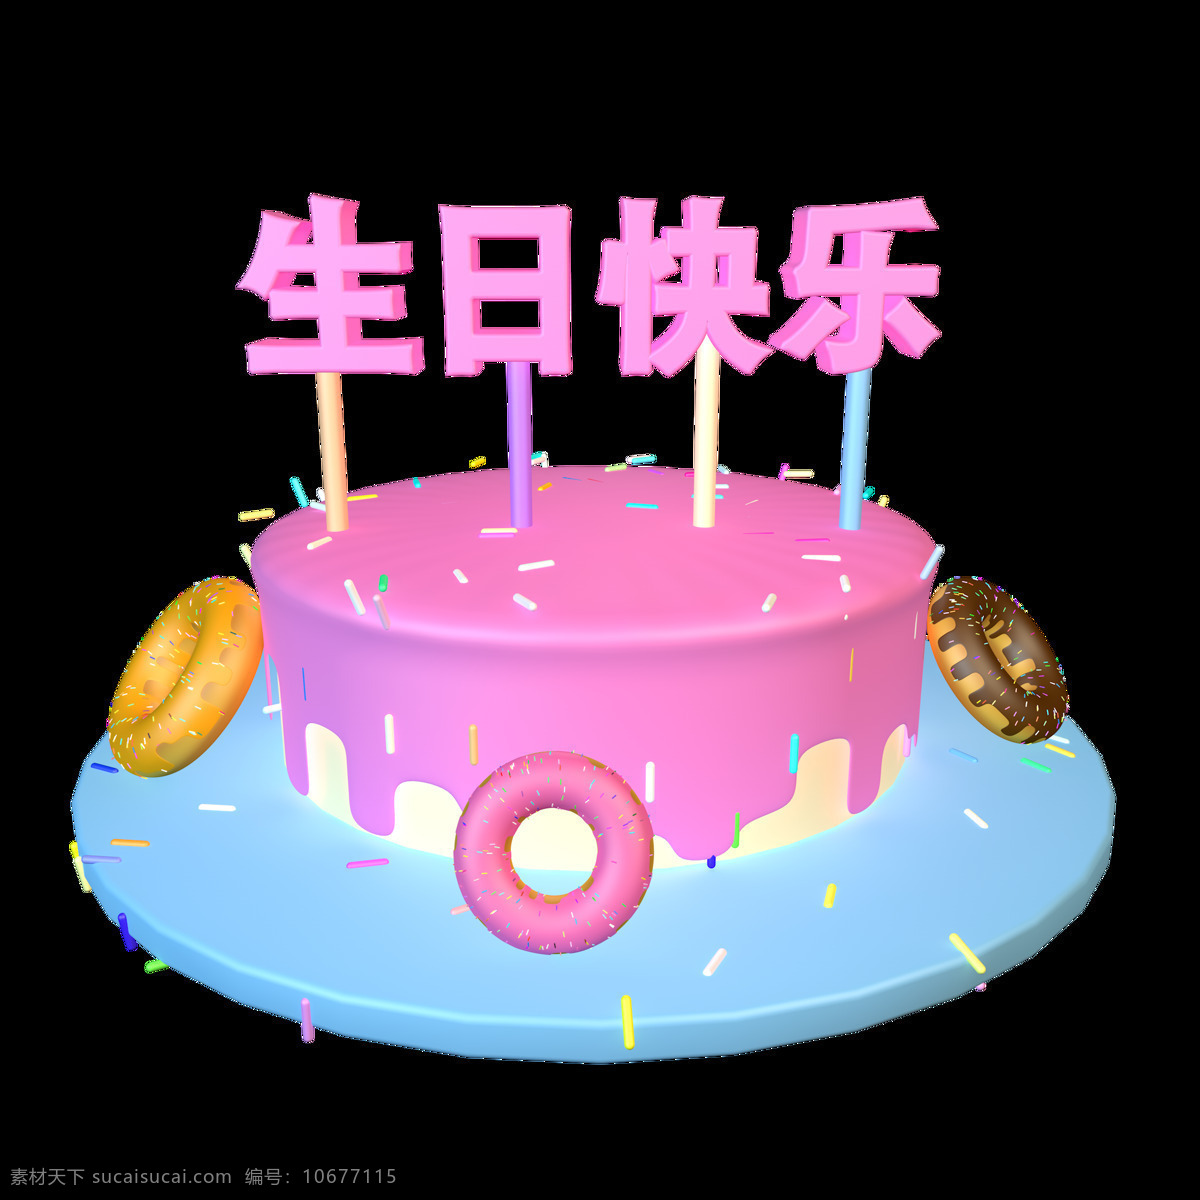 3d 生日 快乐 字体 c4d 生日蛋糕 粉色 甜点 生日快乐 c4d蛋糕